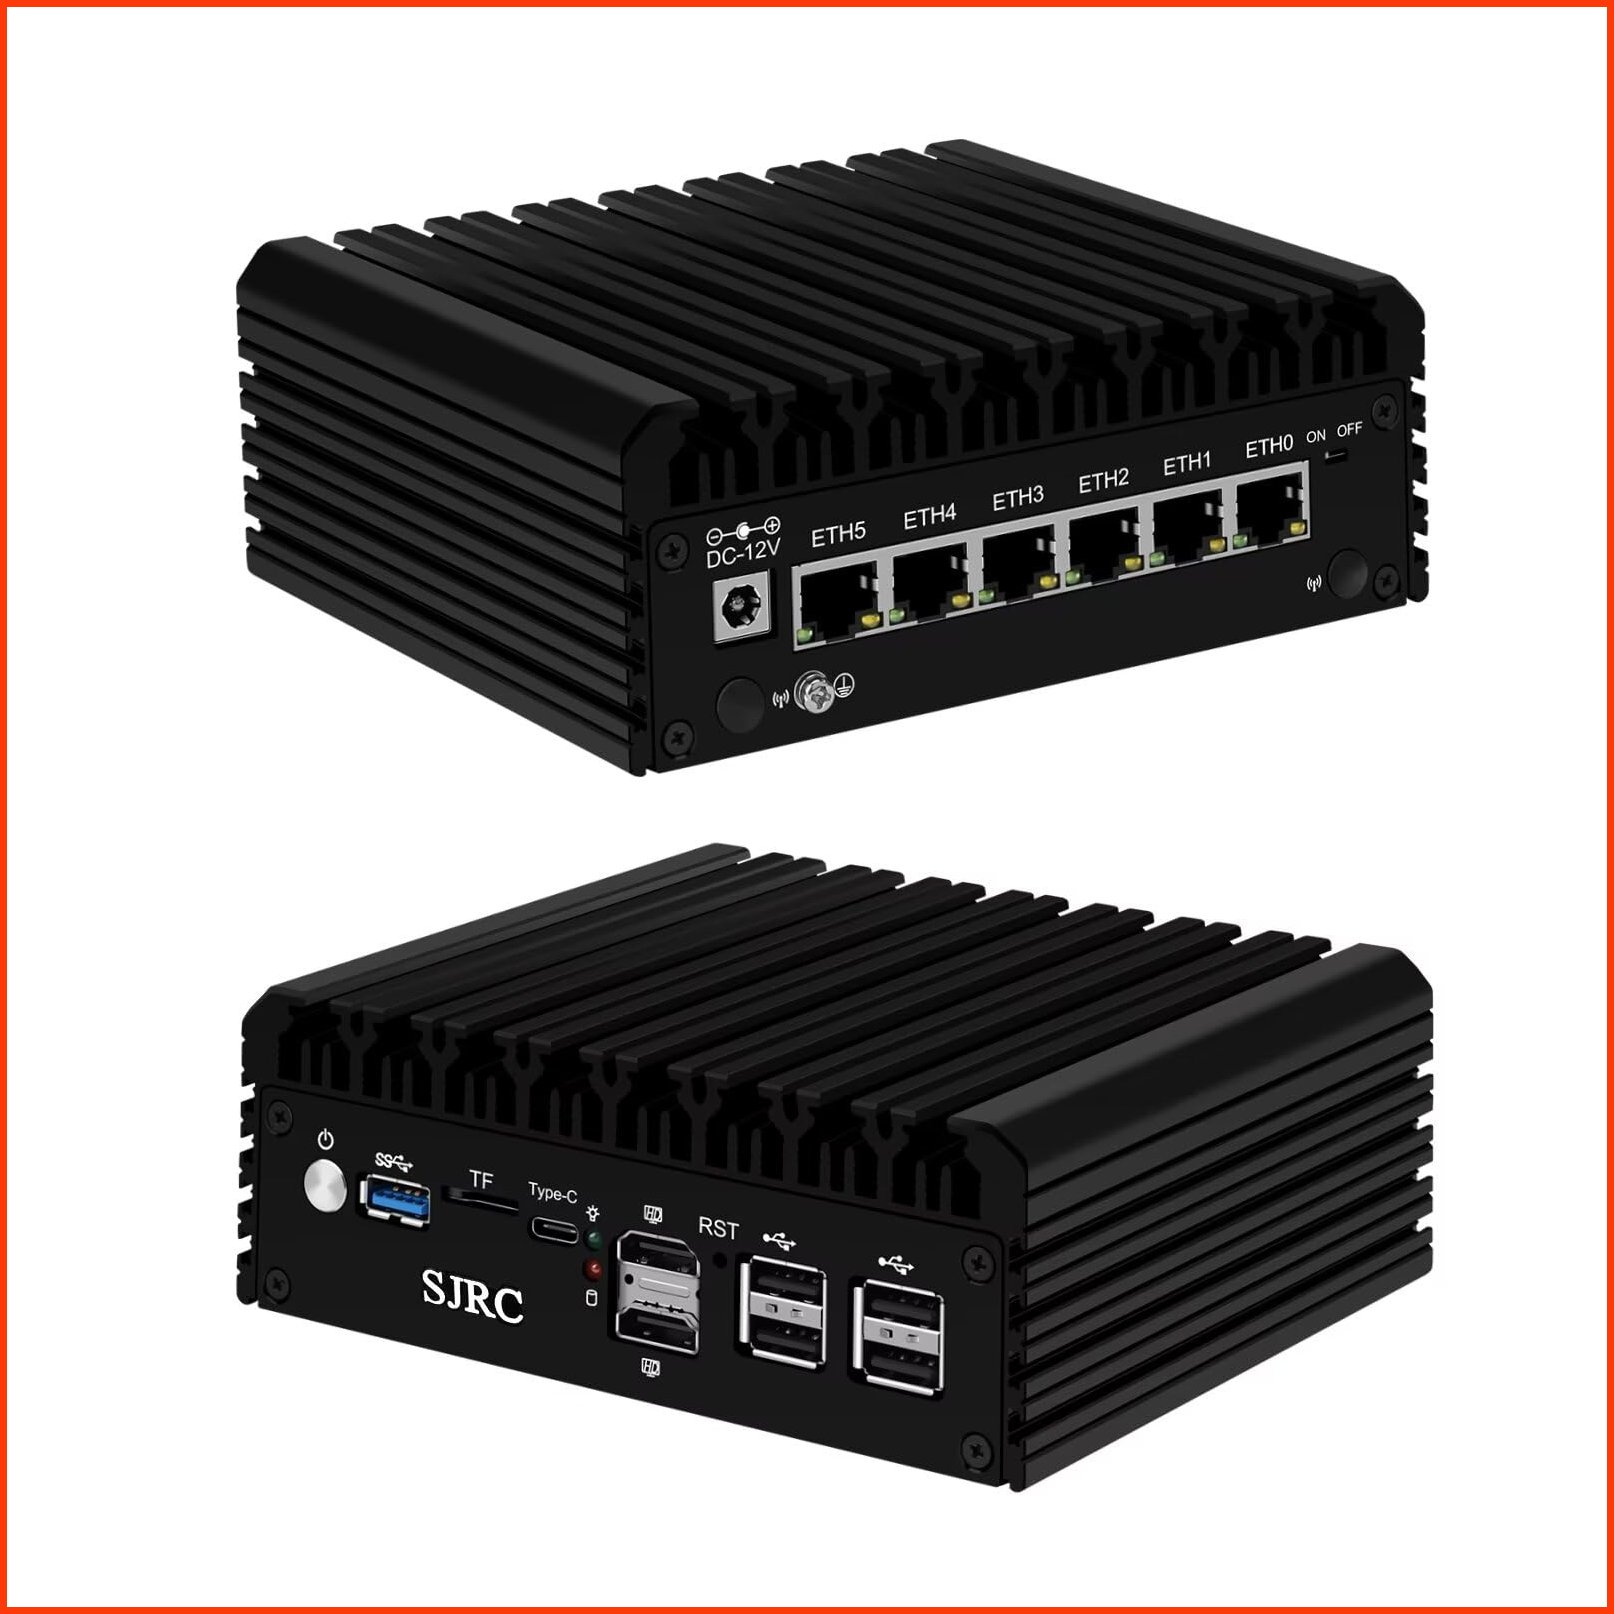 並行輸入品SJRC N100 Mini Computer Fanless Firewall Micro Router Appliance 6 x 2.5GbE I226-V Ethernet Computer 12th Gen